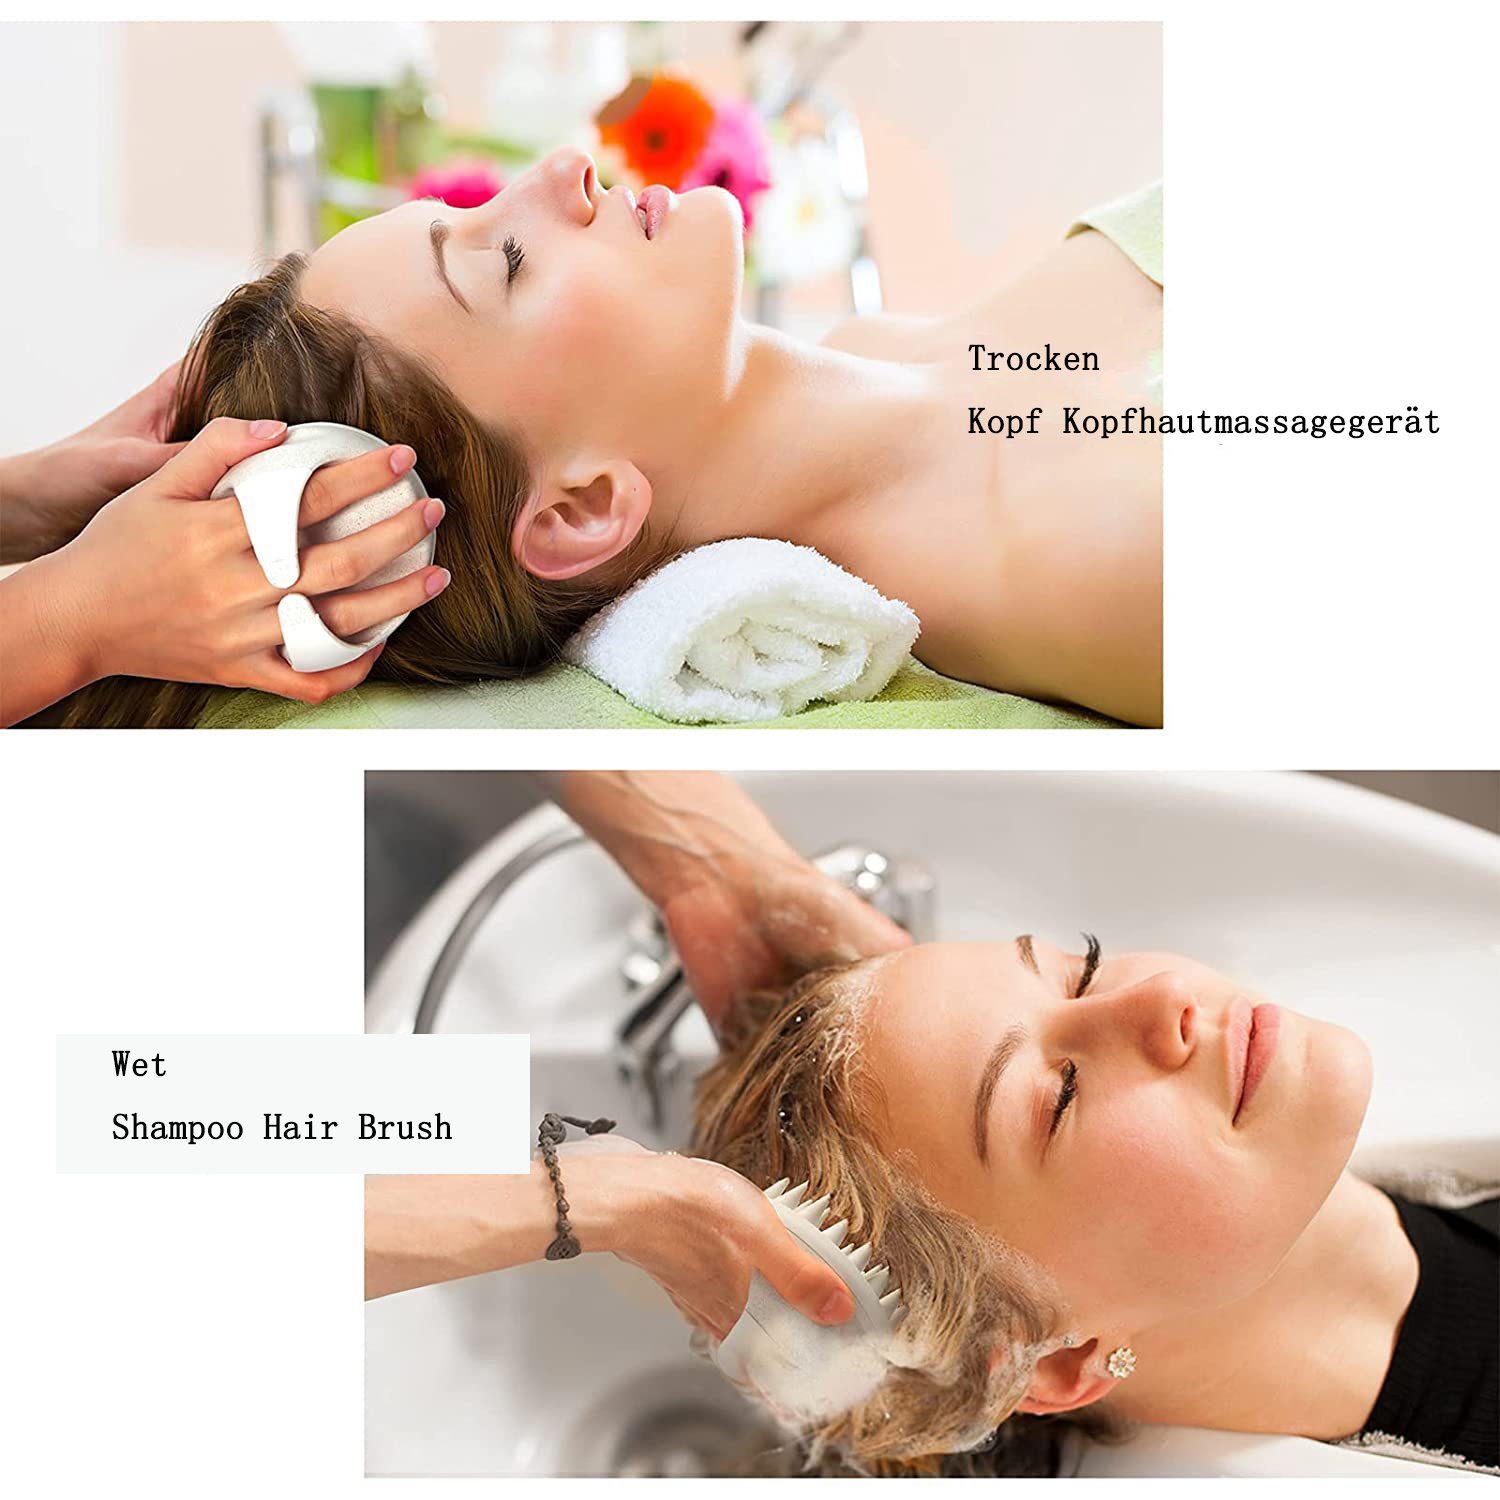 GelldG Haarbürste Kopfhaut Massagebürste Bürste, Haarbürste Silikon beige Shampoo Shampoo